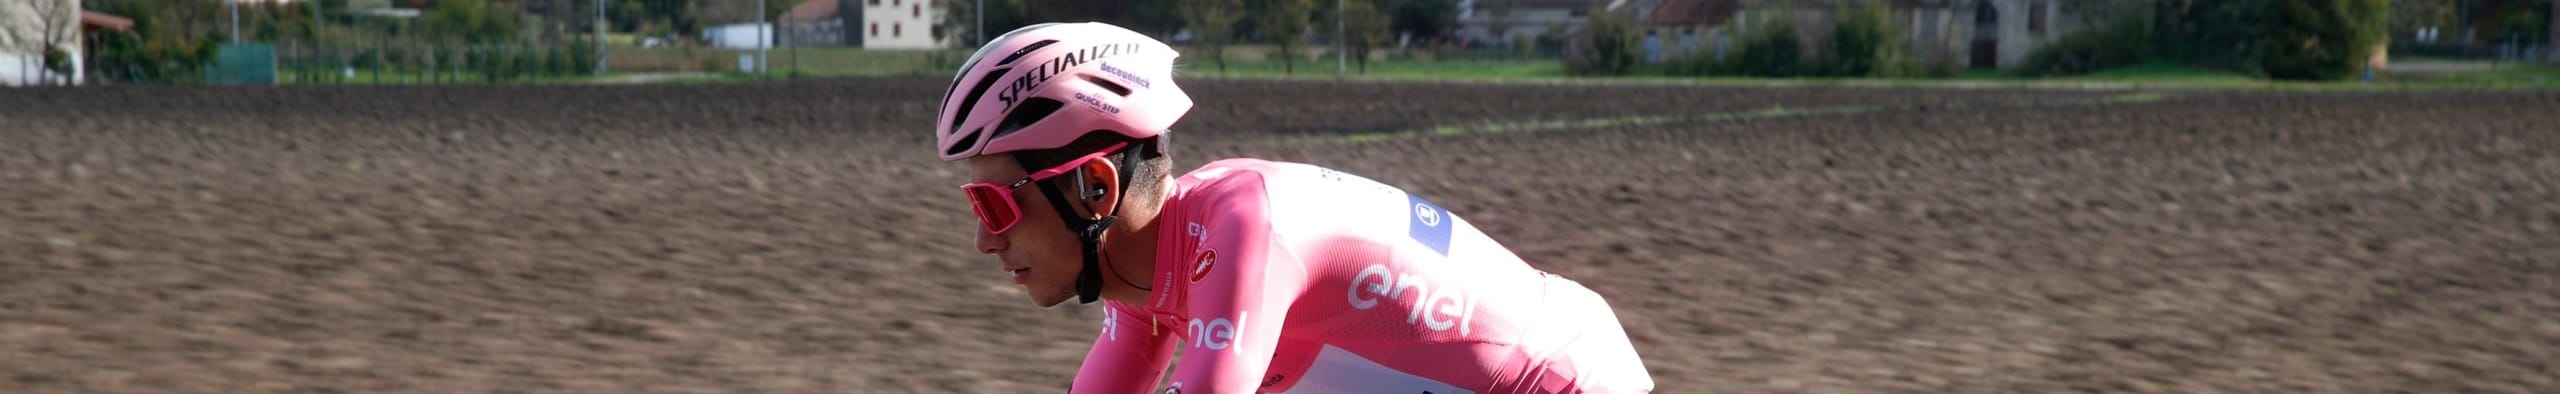 Giro d'Italia 2020, quote e favoriti per la tappa 14: la cronometro apre a un weekend decisivo